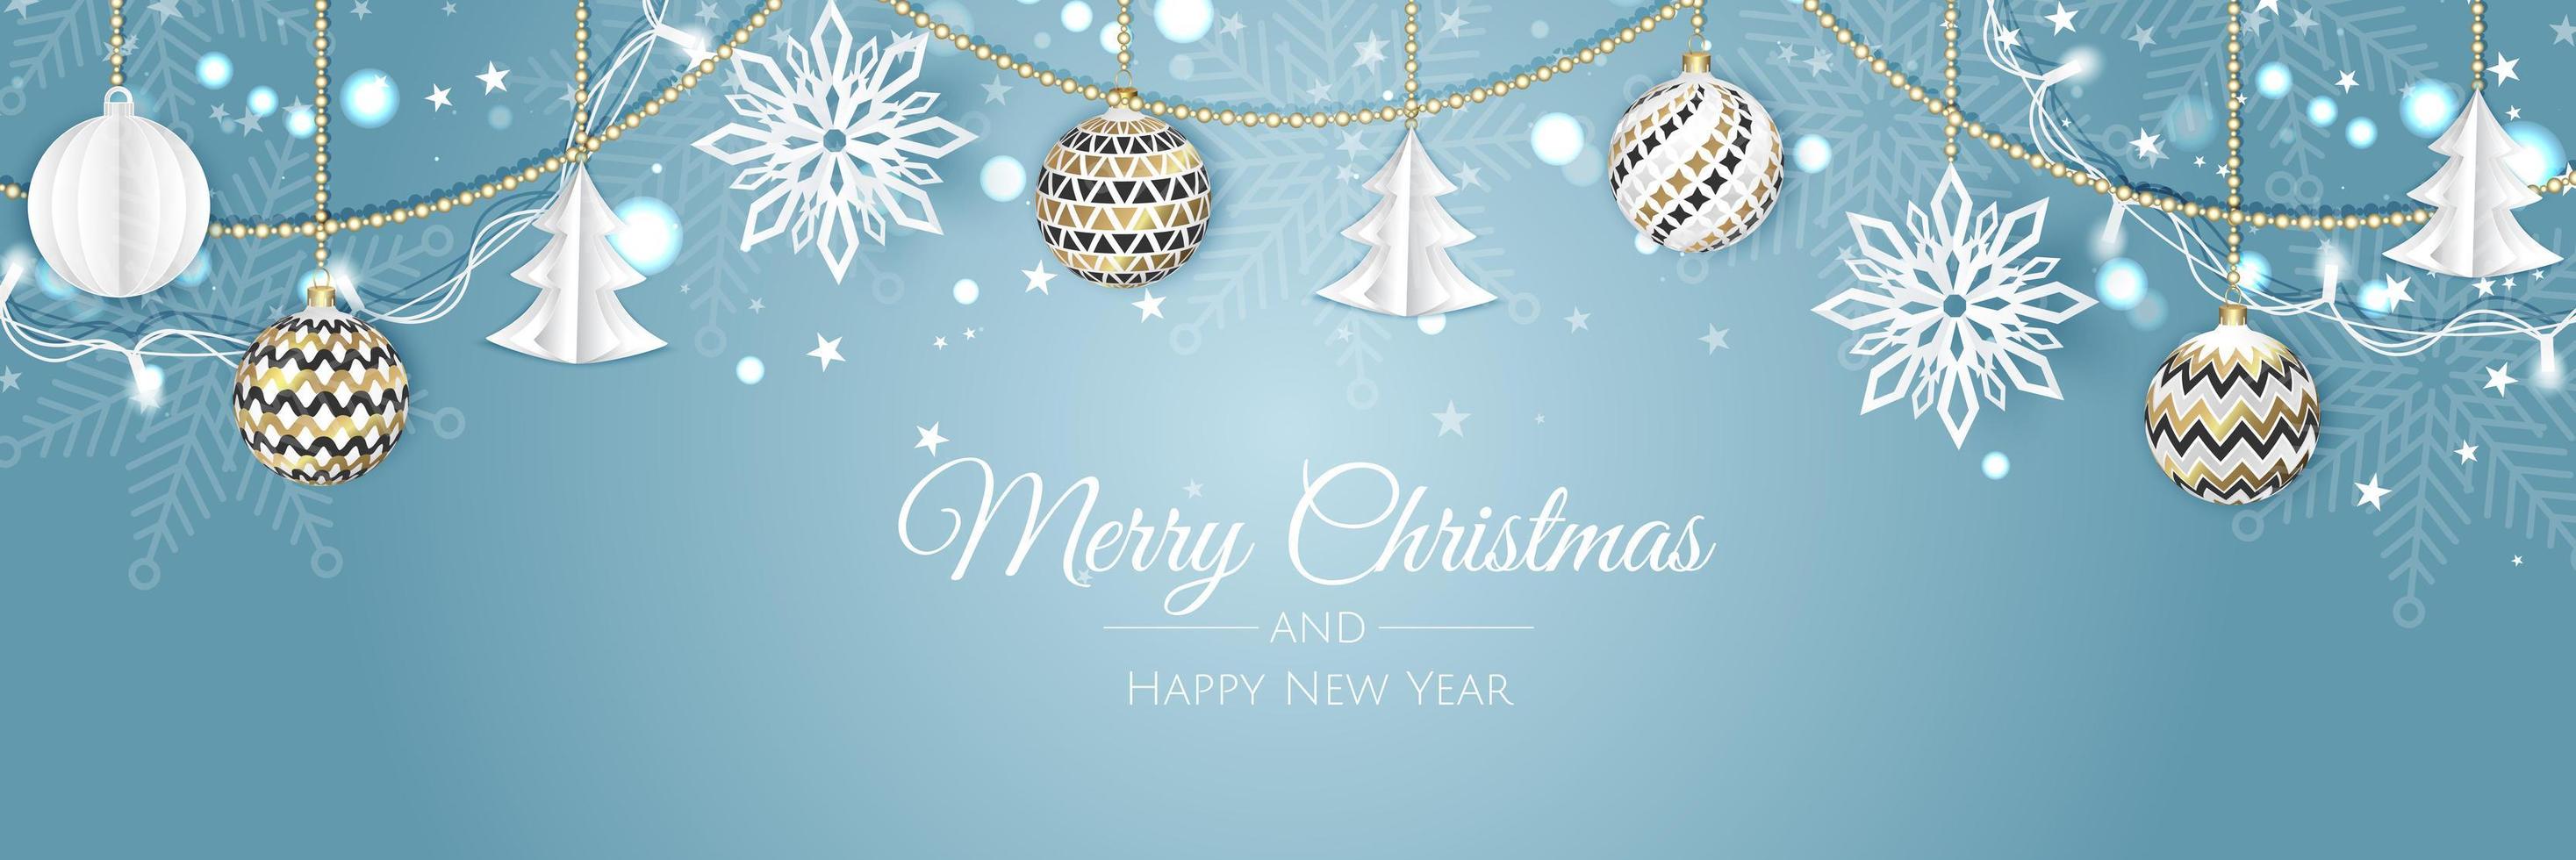 banner de navidad. objetos de navidad de fondo vistos desde arriba. feliz navidad y próspero año nuevo vector